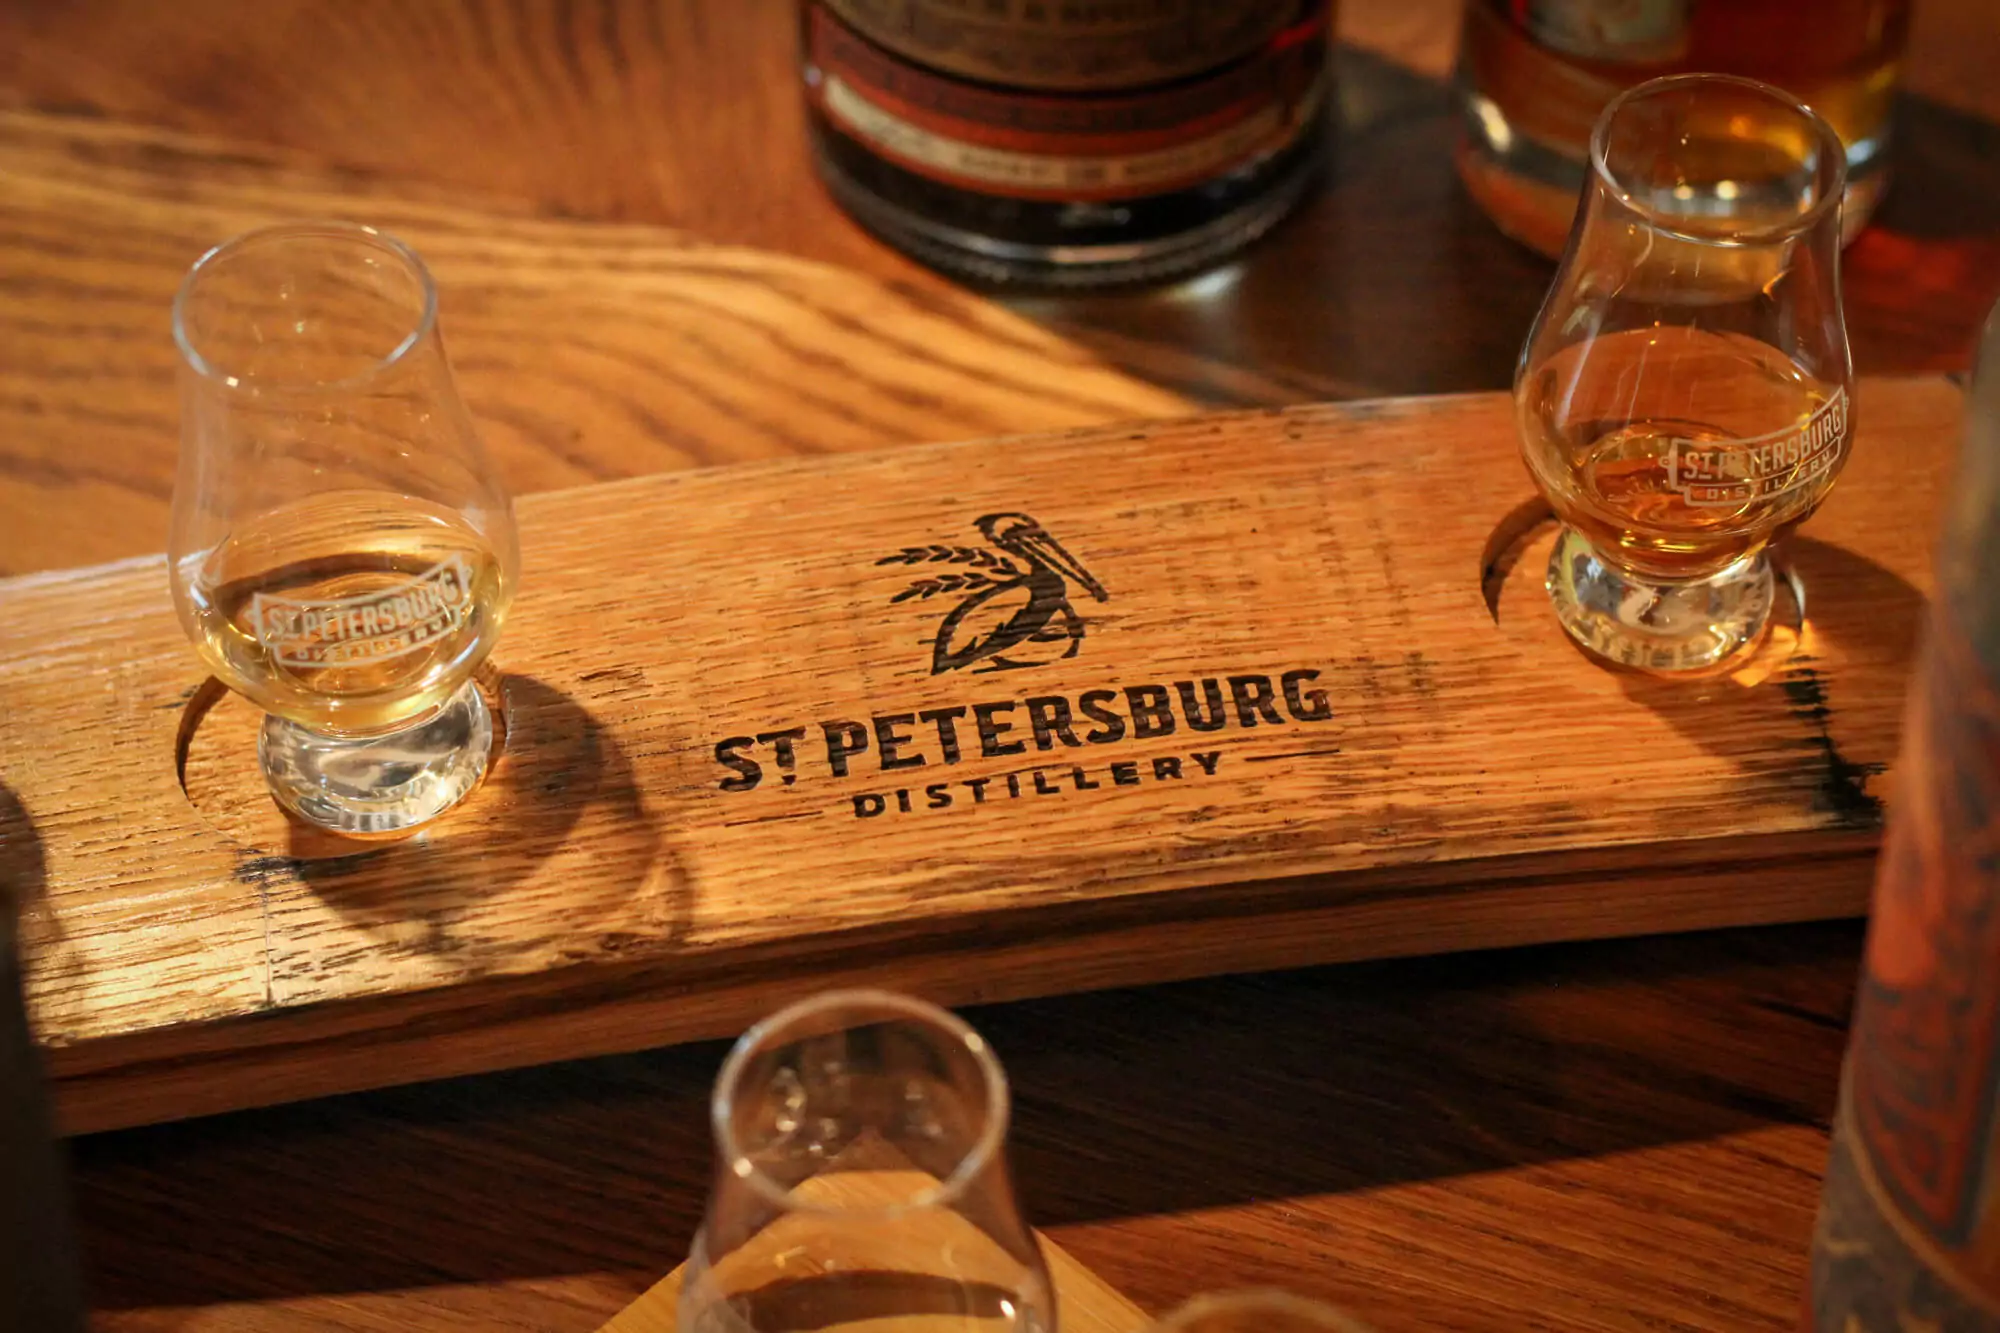 St petersburg distillery - st petersburg, pennsylvania.